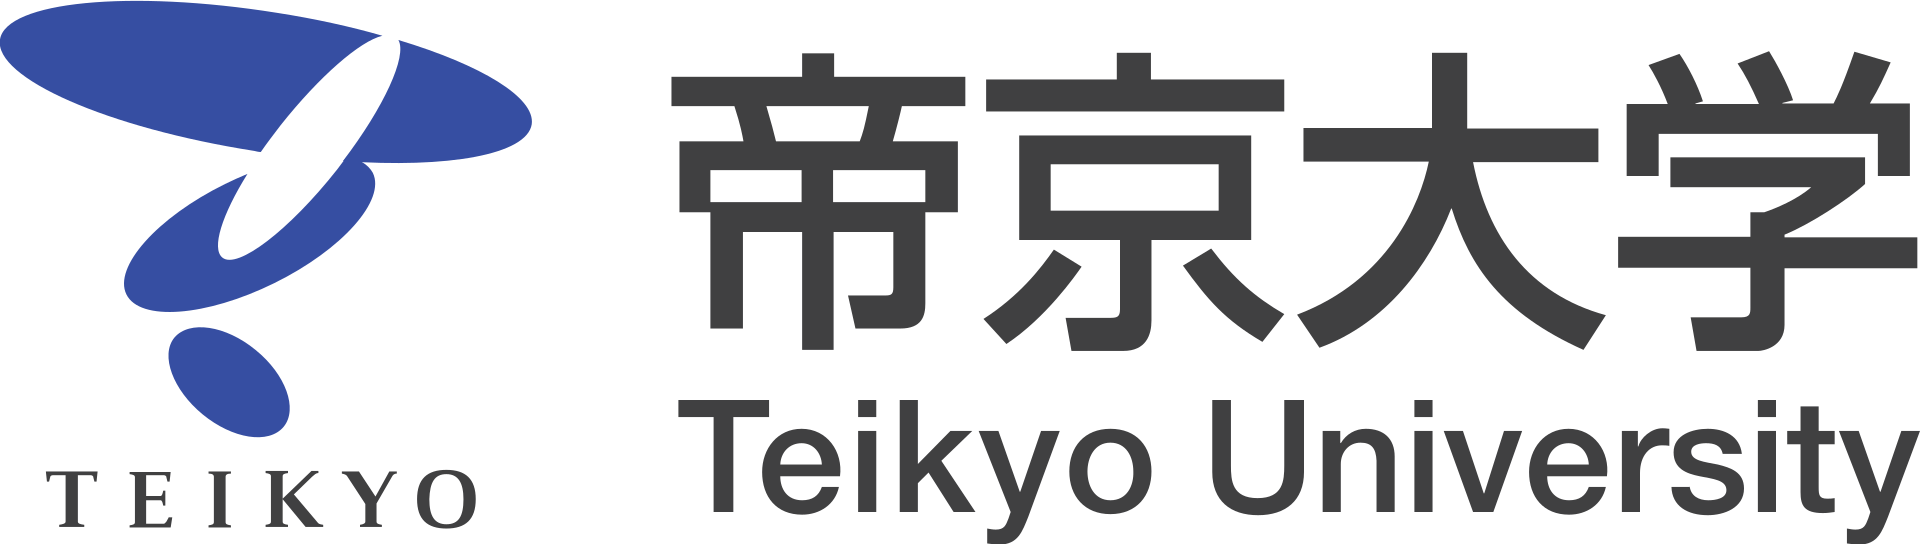 Teikyo University logo